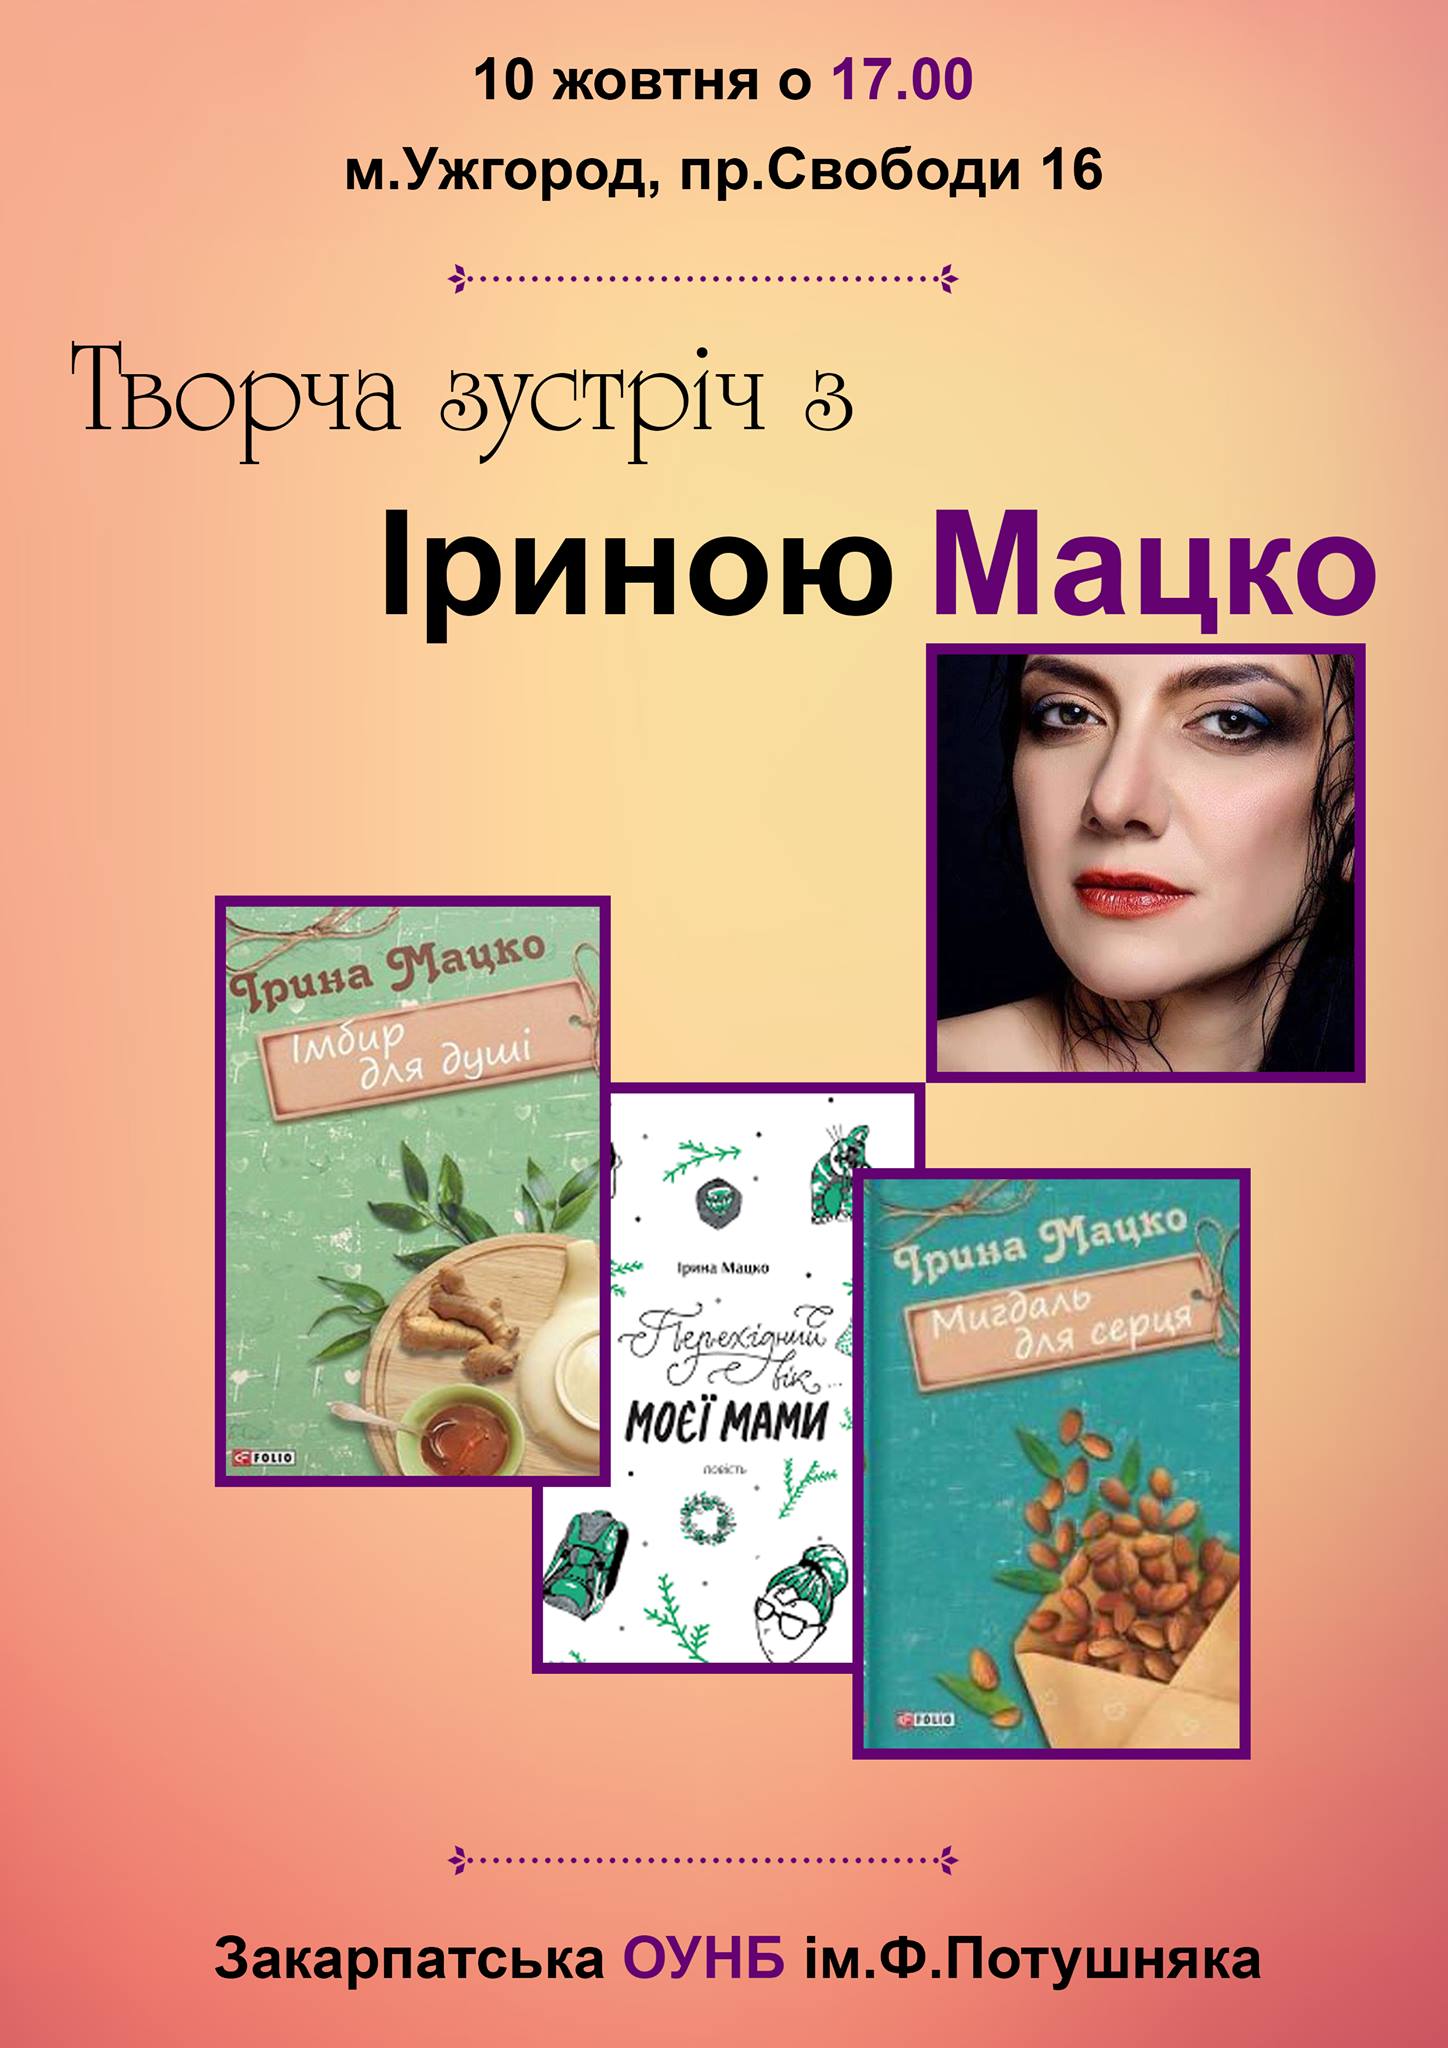 10 жовтня о 17.00 у Закарпатській обласній універсальній науковій бібліотеці ім. Ф.Потушняка відбудеться творча зустріч з відомою українською письменницею Іриною Мацко.     